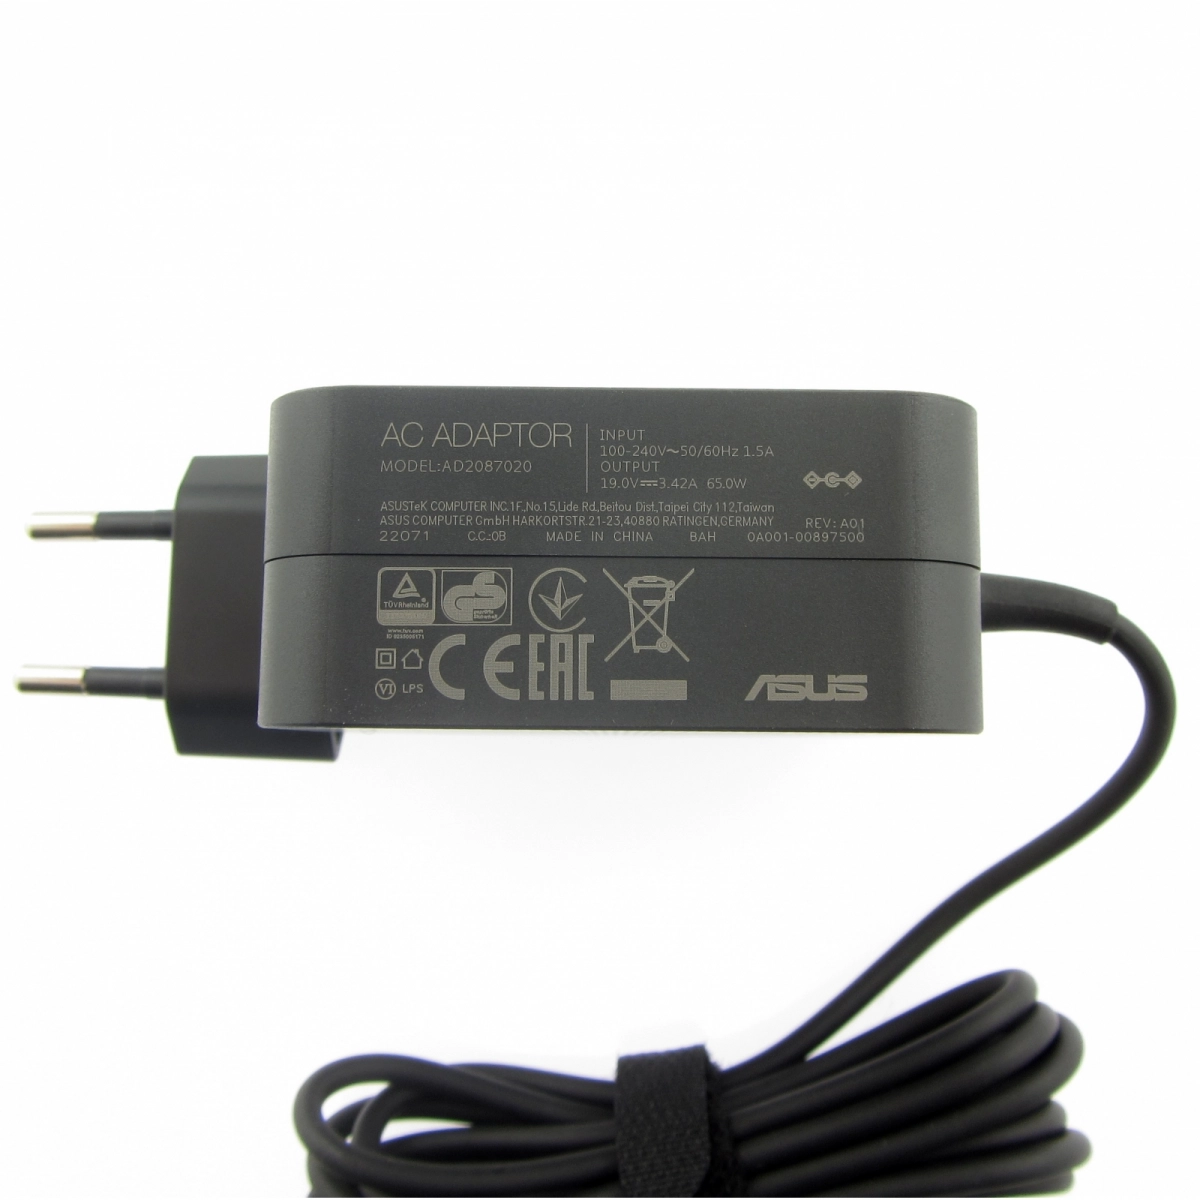 Asus Adapter 65W 19V 2P(4PHI) EU Type, 0A001-00441200 (19V 2P(4PHI) EU Type)